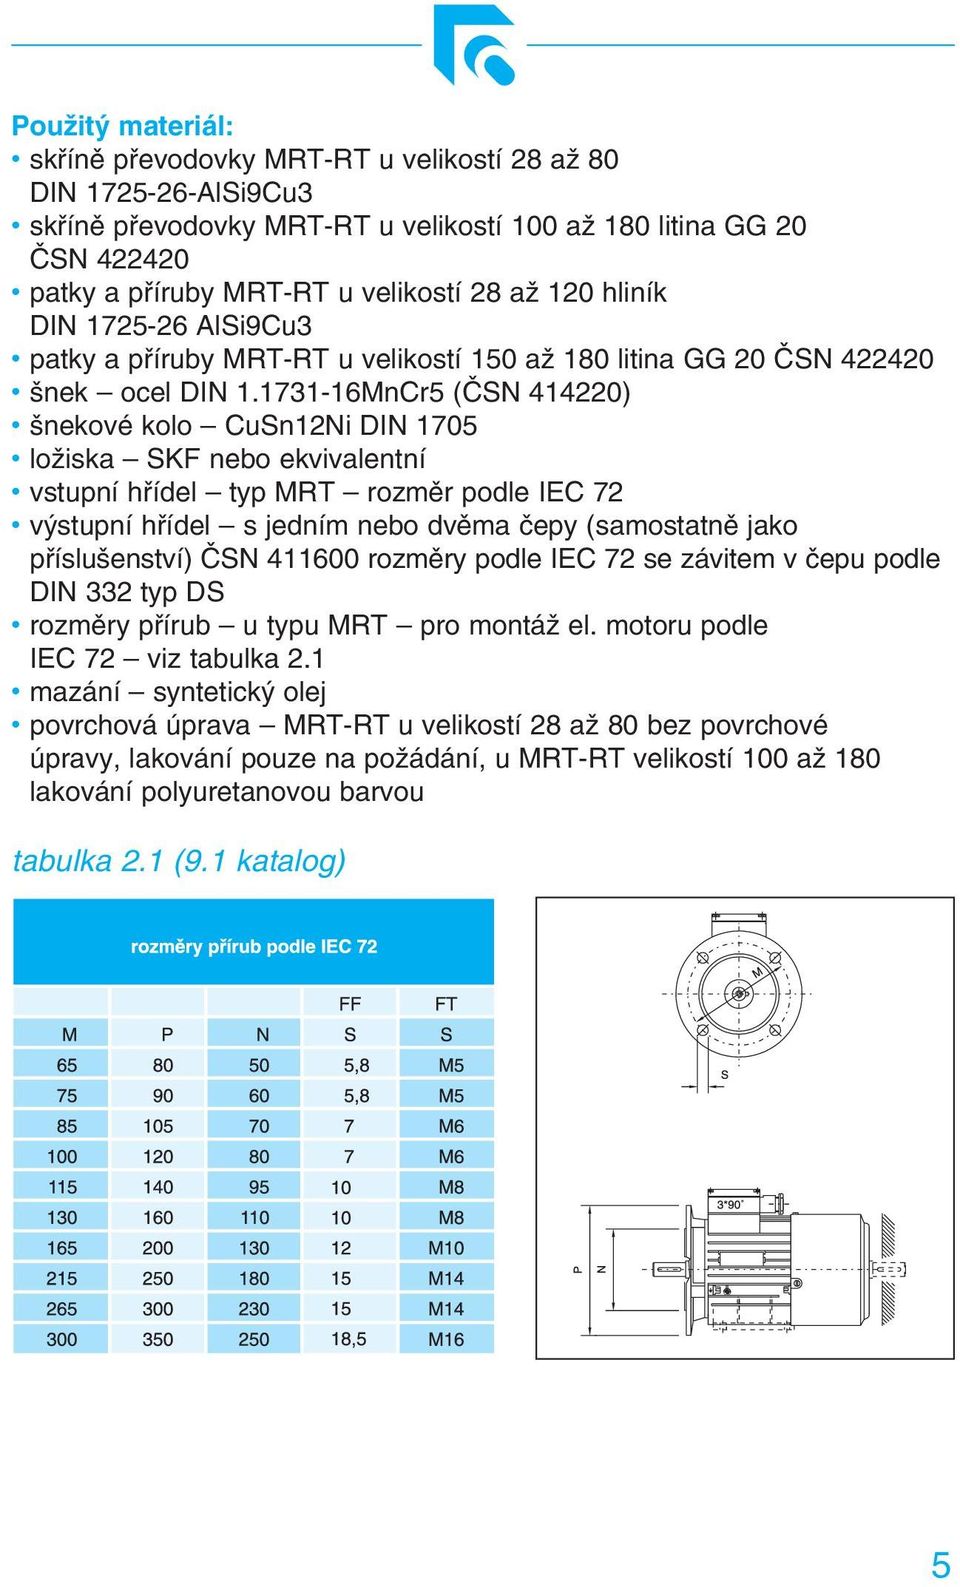 1731-16MnCr5 (ČSN 414220) šnekové kolo CuSn12Ni DIN 1705 ložiska SKF nebo ekvivalentní vstupní hřídel typ MRT rozměr podle IEC 72 výstupní hřídel s jedním nebo dvěma čepy (samostatně jako